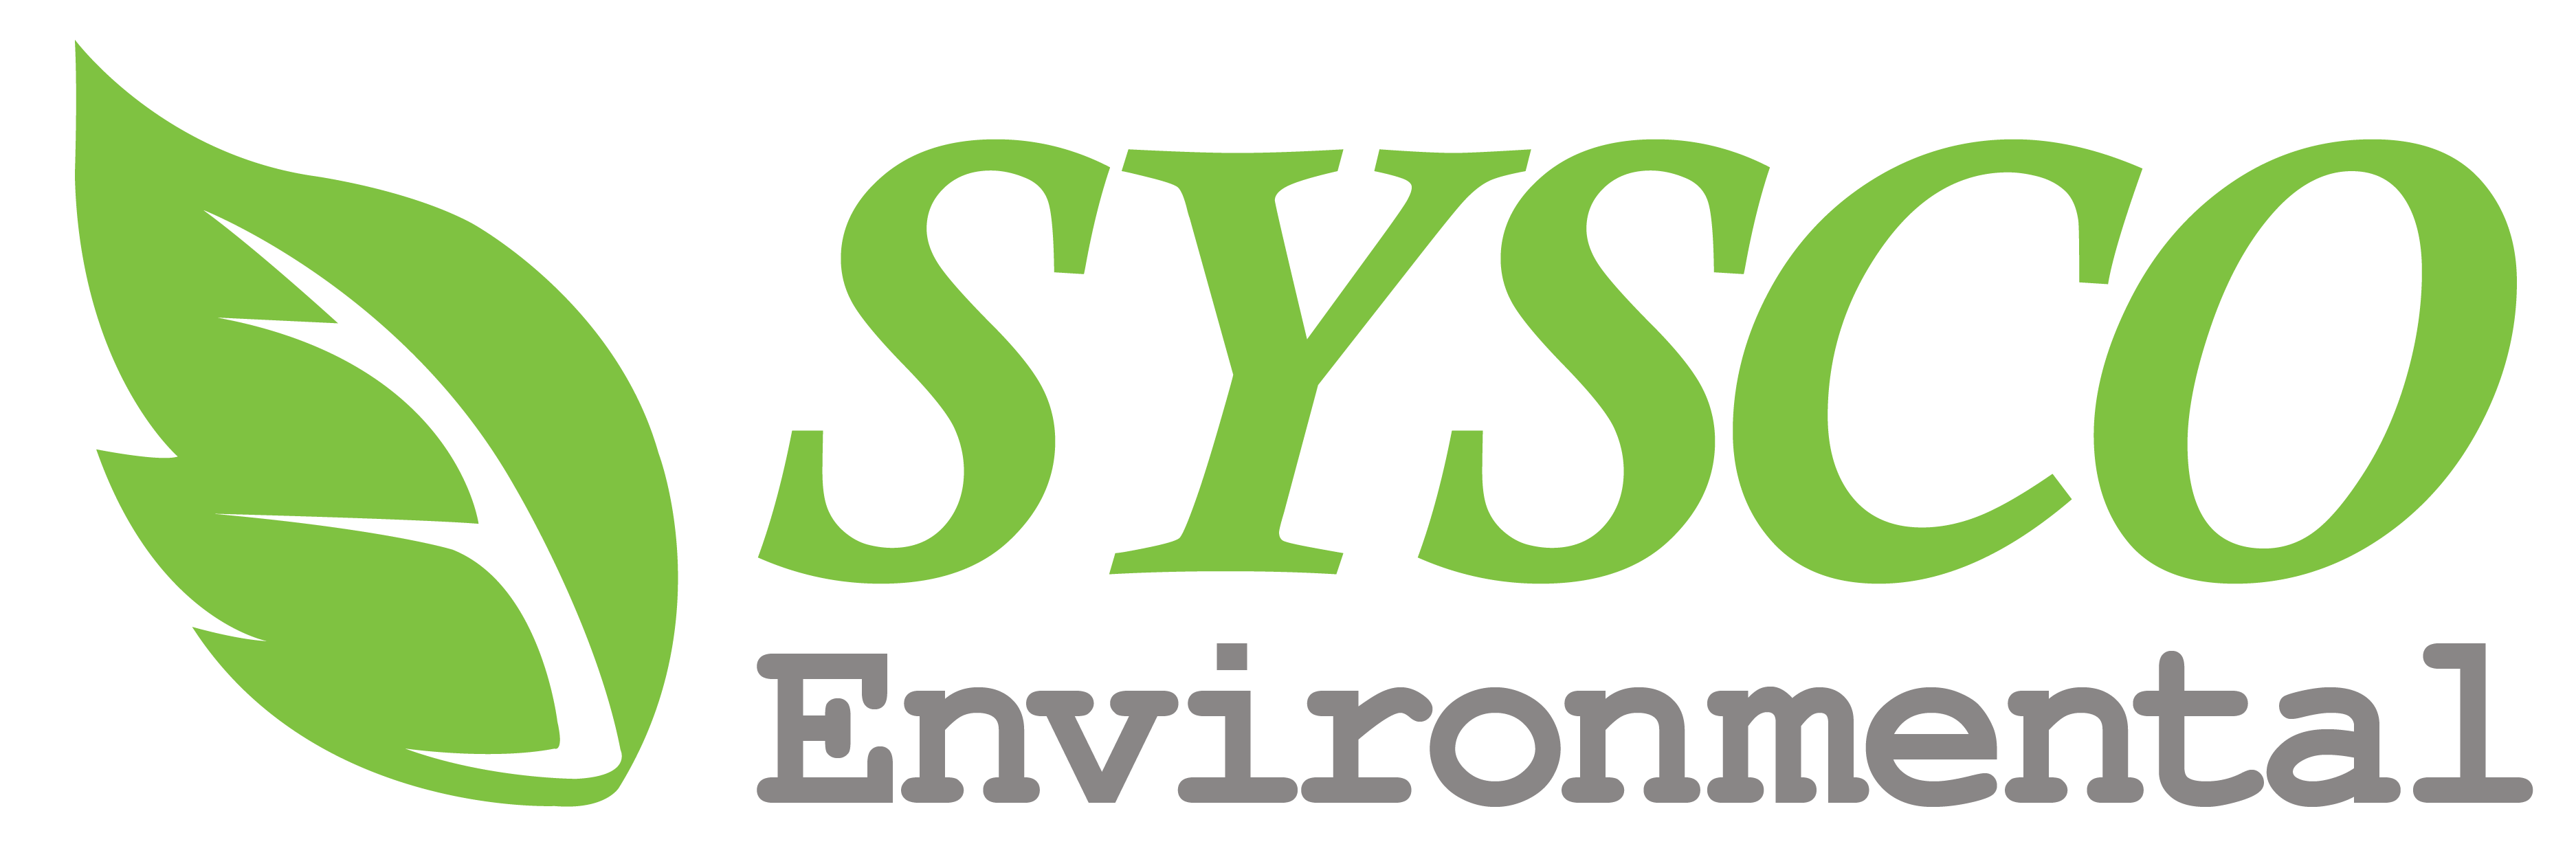 Sysco Environmental